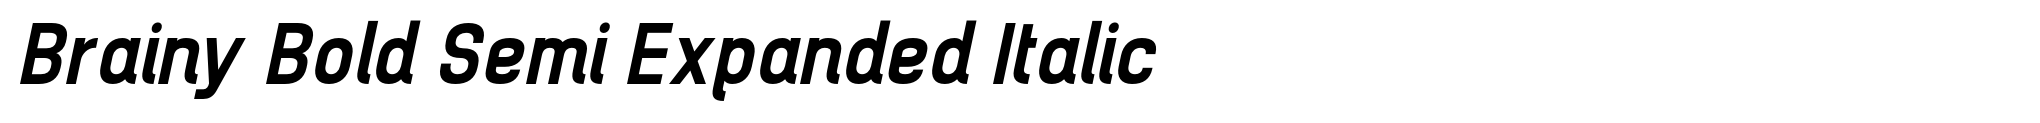 Brainy Bold Semi Expanded Italic image